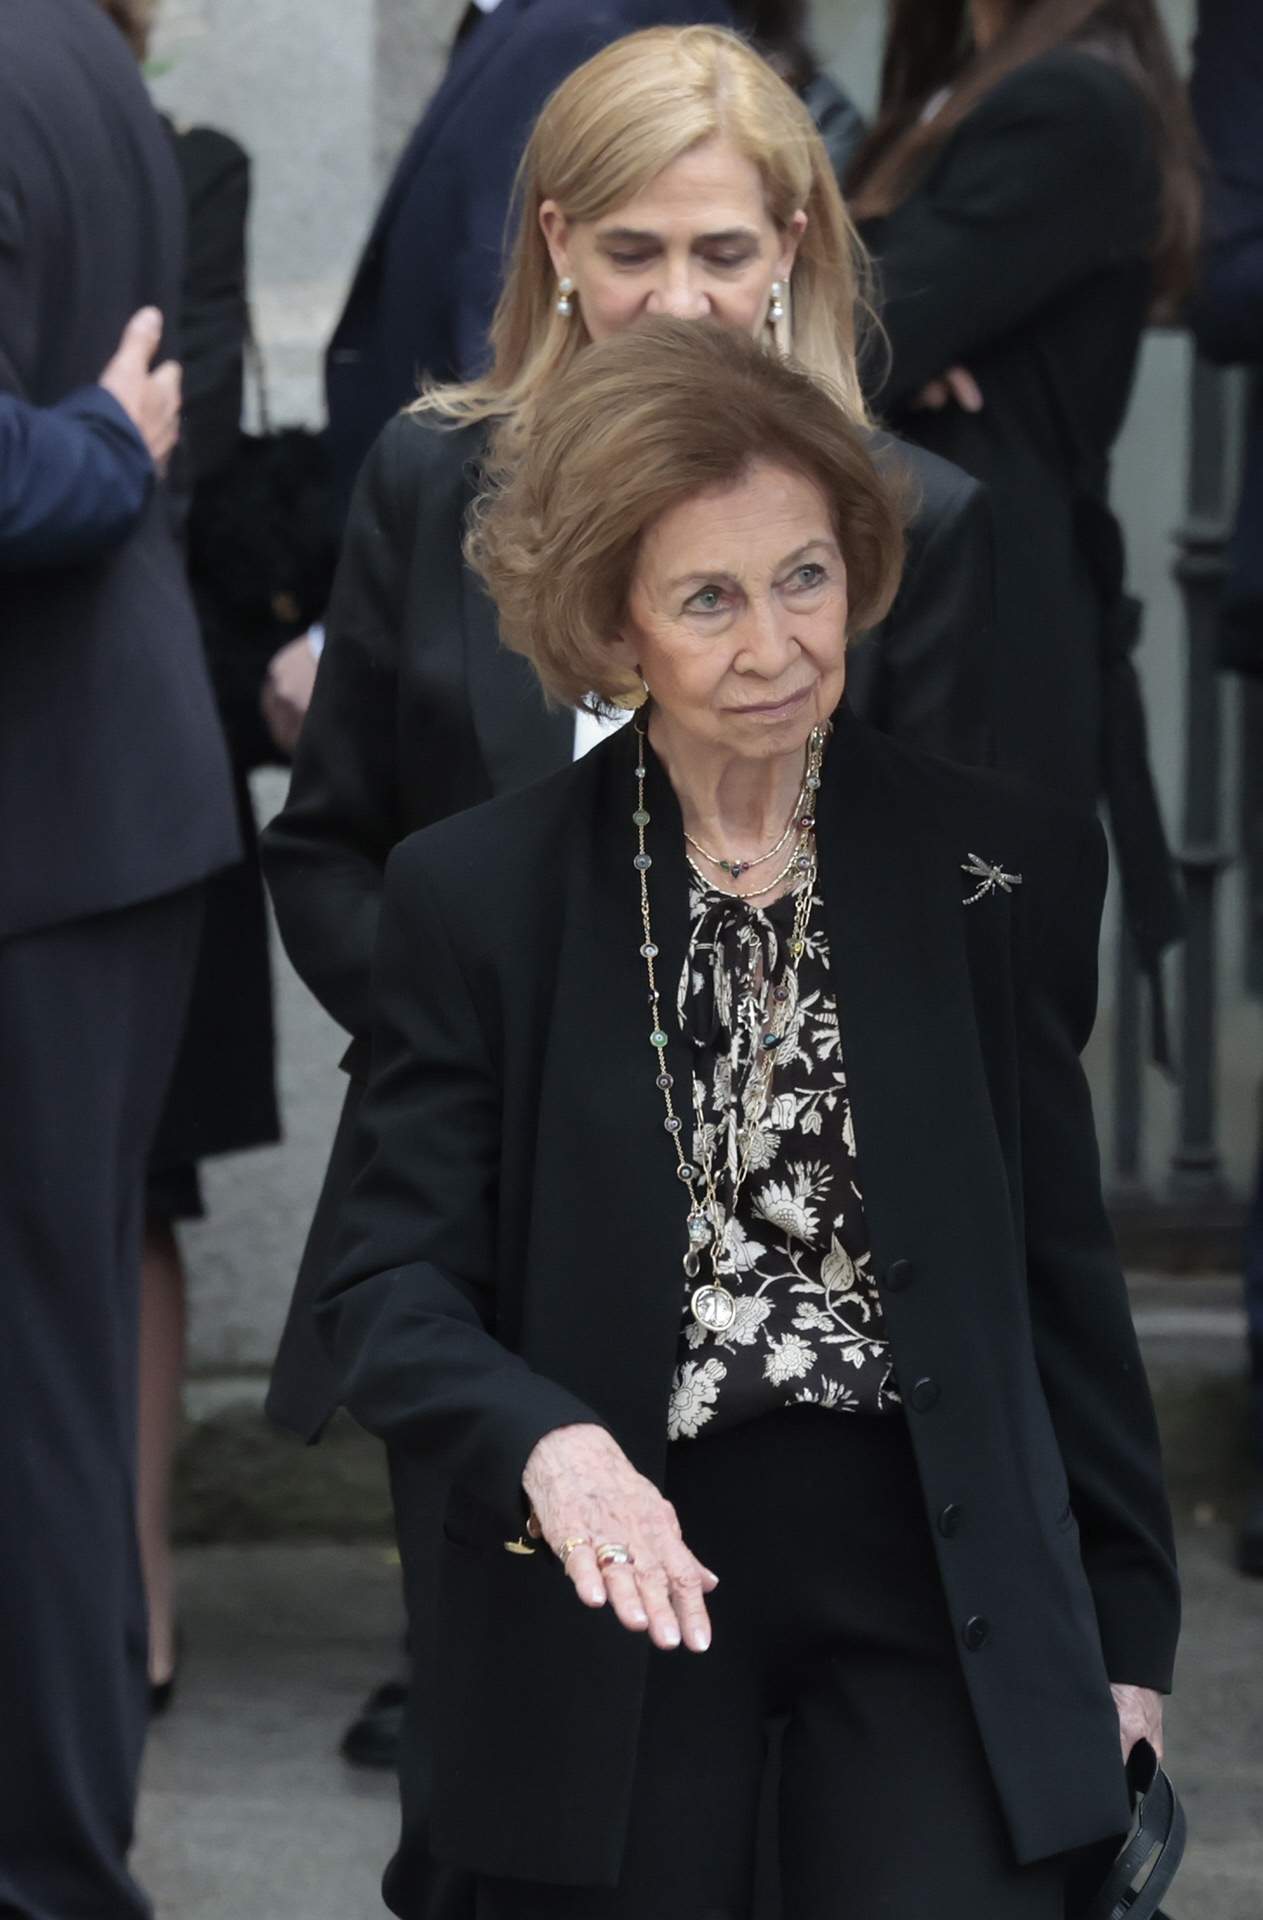 La reina Sofía ingresada de urgencia en plena noche, problemas de salud a los 85 años